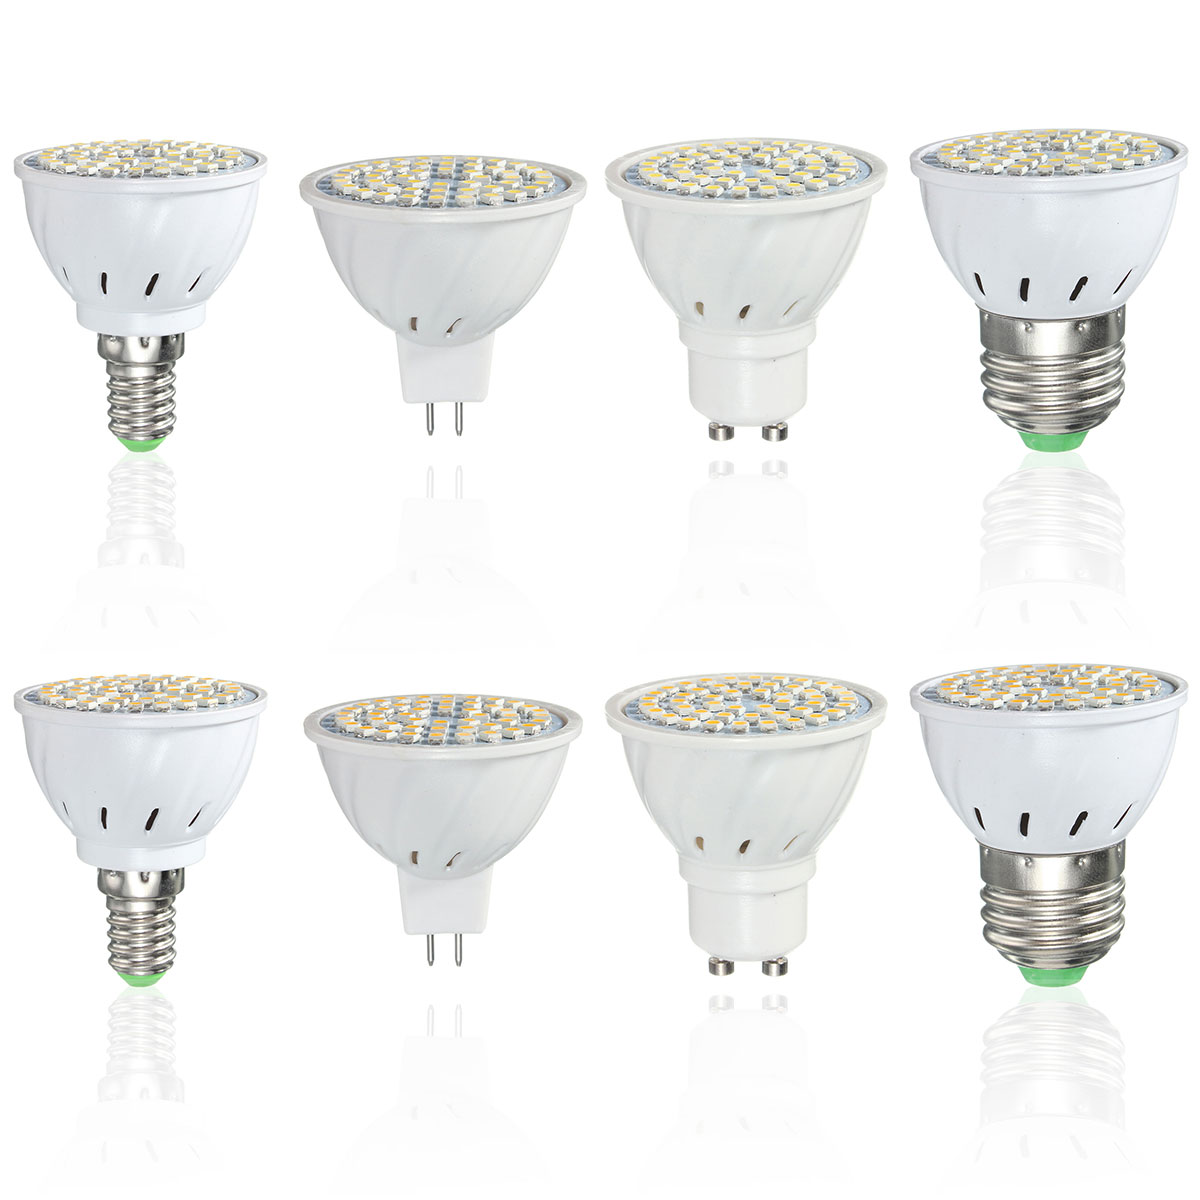 ZX-E27-E14-GU10-MR16-LED-4W-48-SMD-3528-LED-Pure-White-Warm-White-Spot-Lightt-Lamp-Bulb-AC110V-AC220-1076565-4